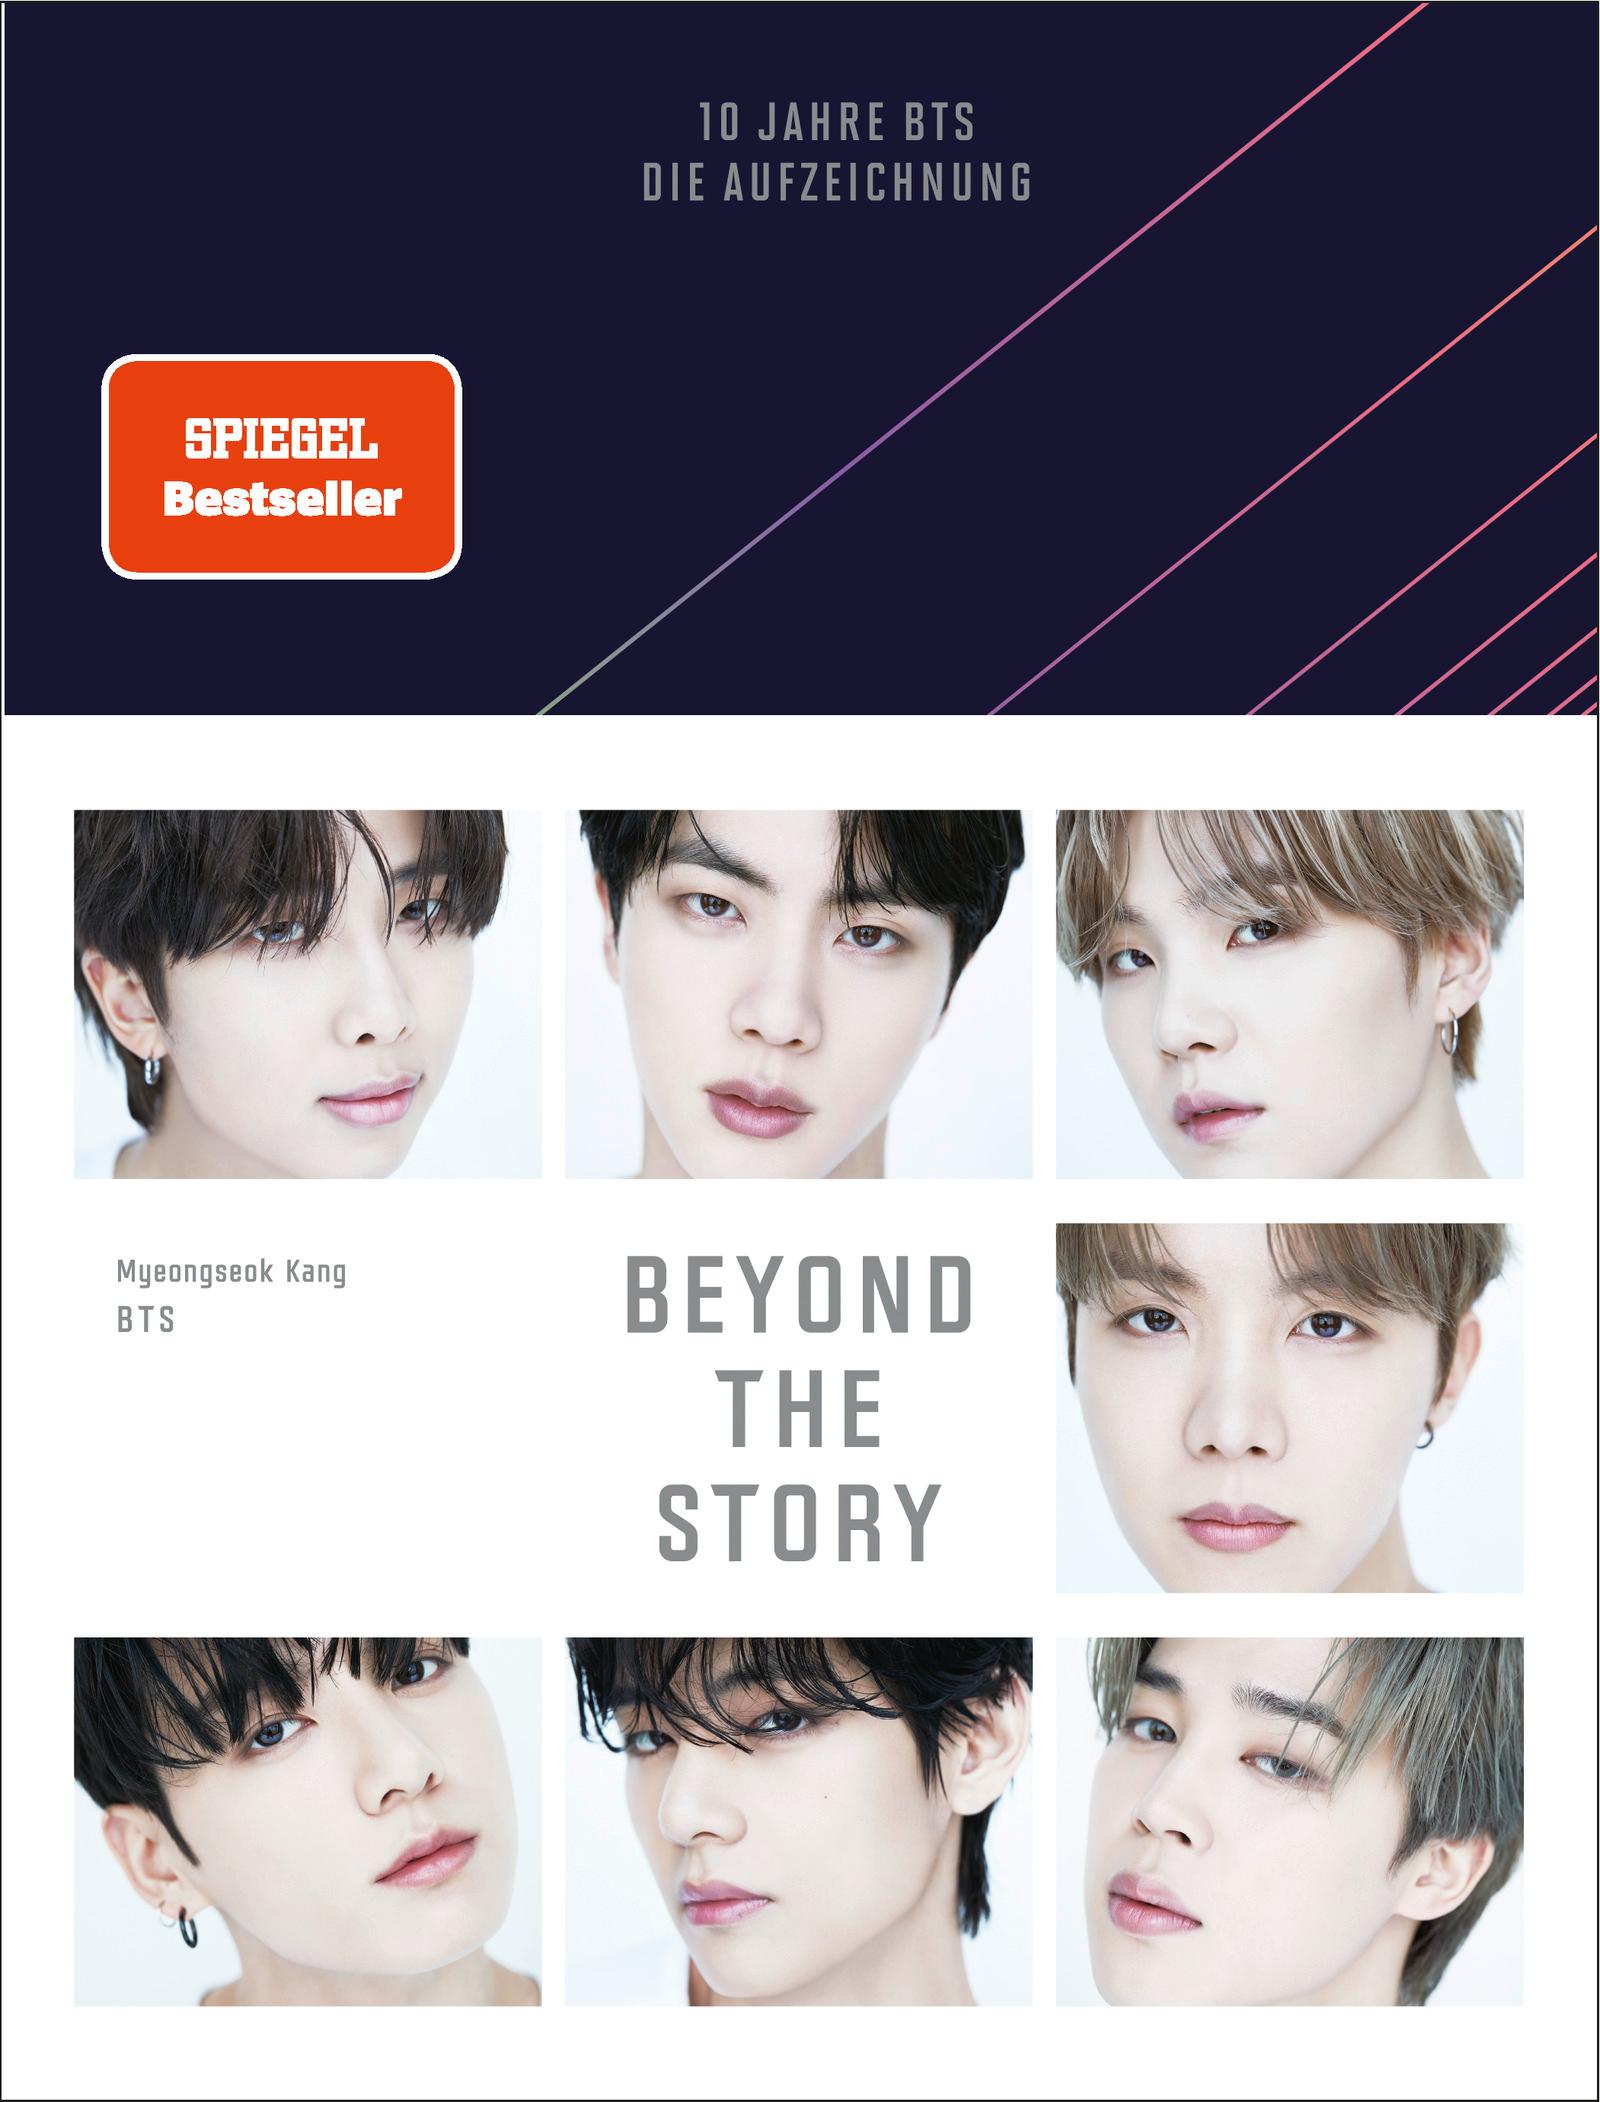 Beyond The Story 10 Jahre BTS - Die Aufzeichnung | Deutsche Ausgabe des ersten und einzigen offiziellen Buchs von BTS, veröffentlicht zur Feier des 10-jährigen Jubiläums